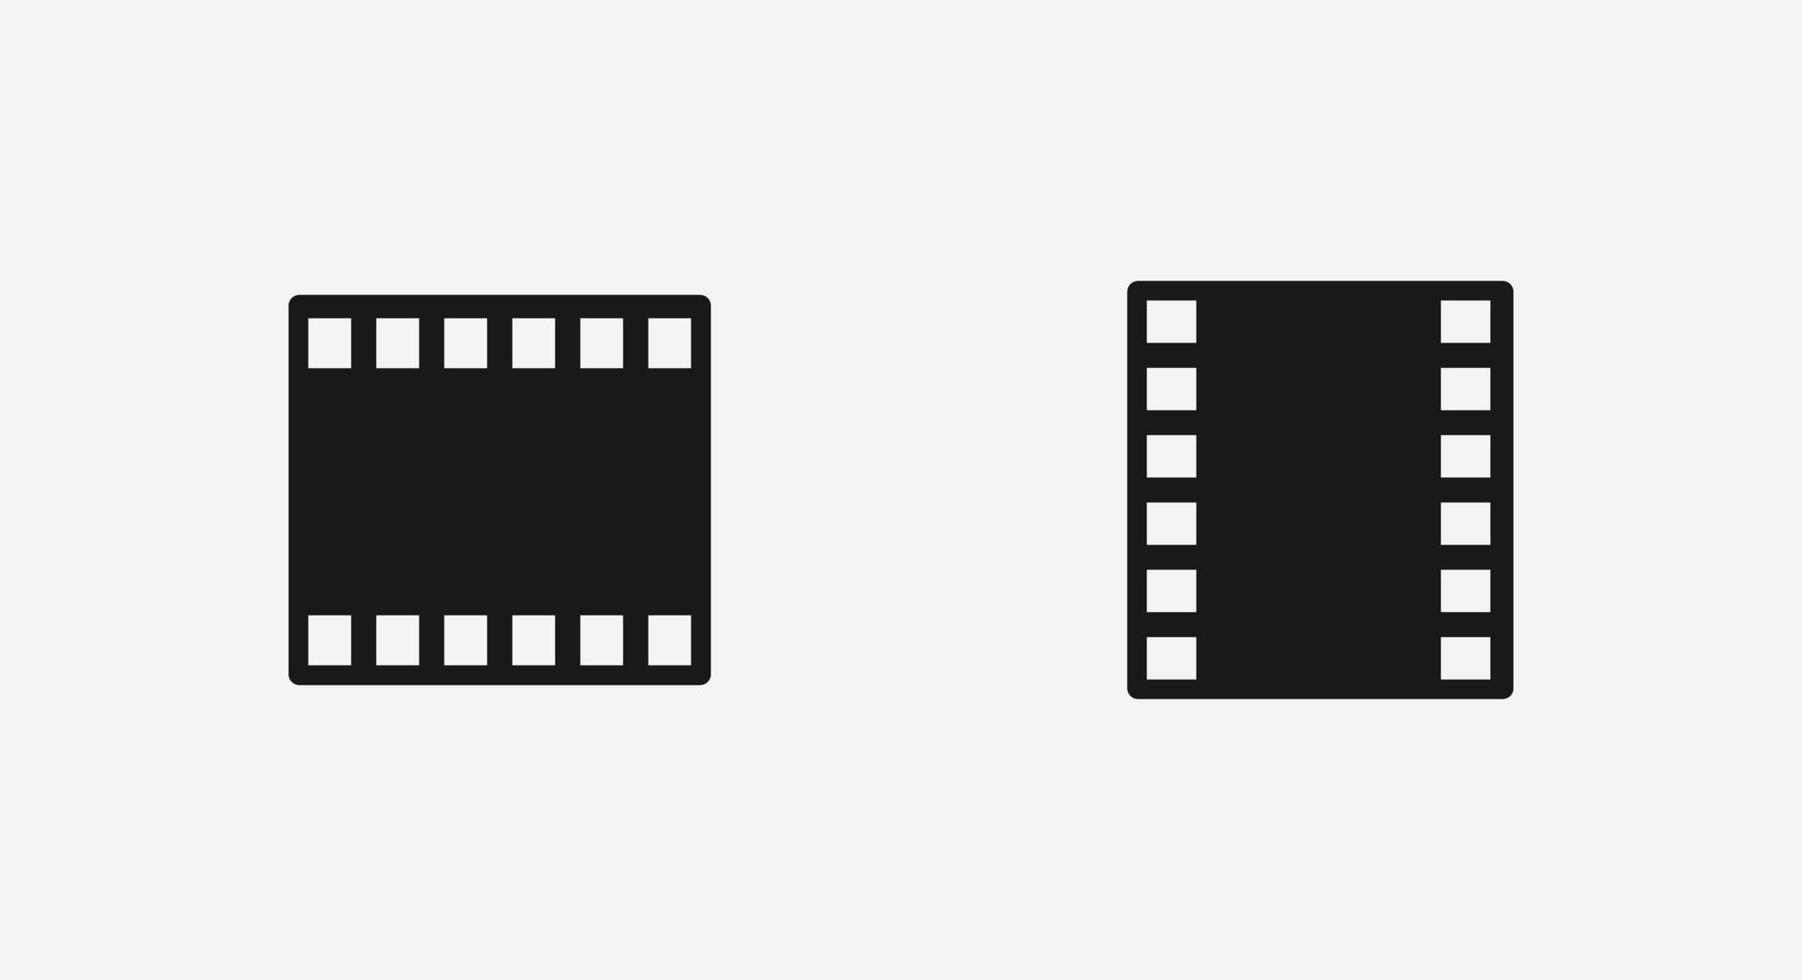 filme, símbolo de ícone de vetor de cinema para site e aplicativo móvel